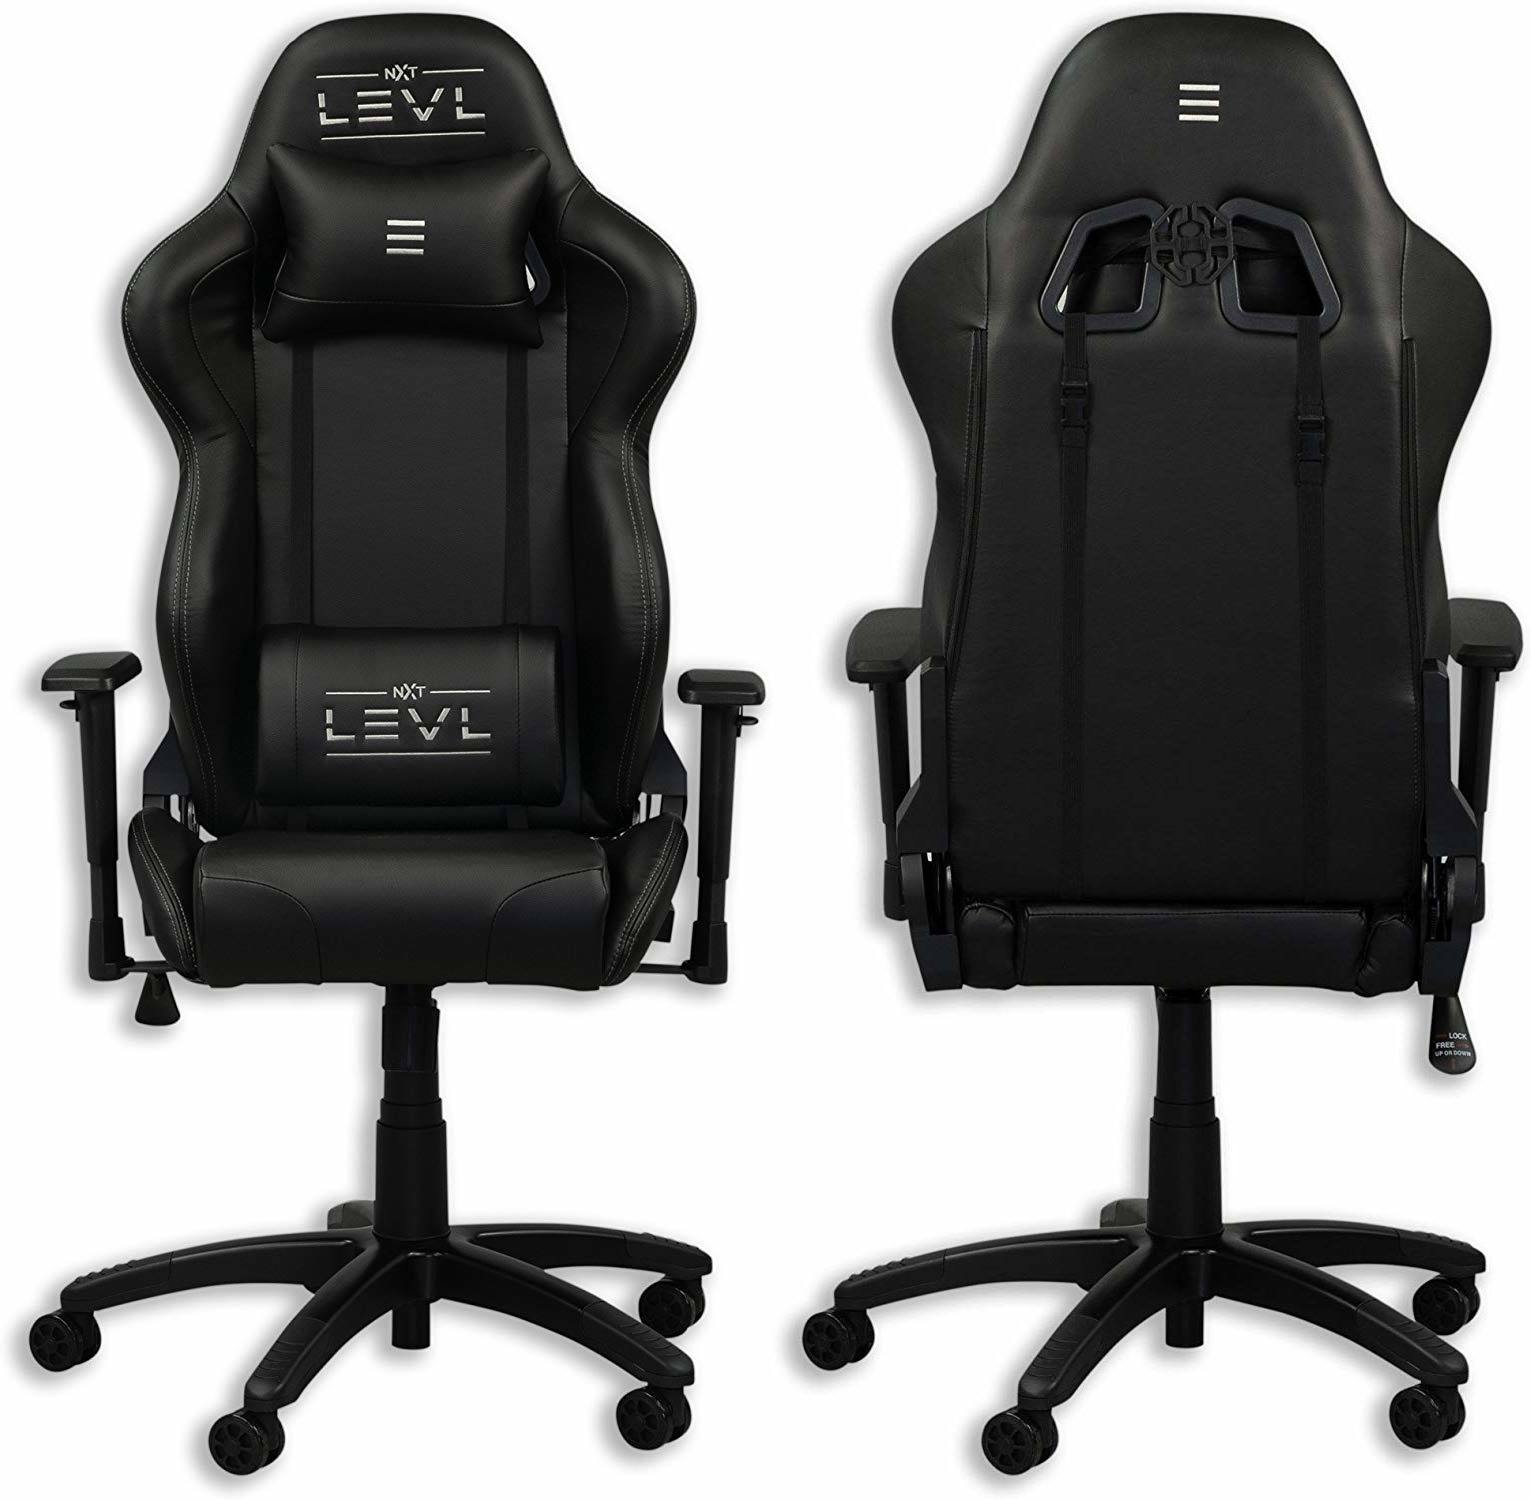 LEVL Chair